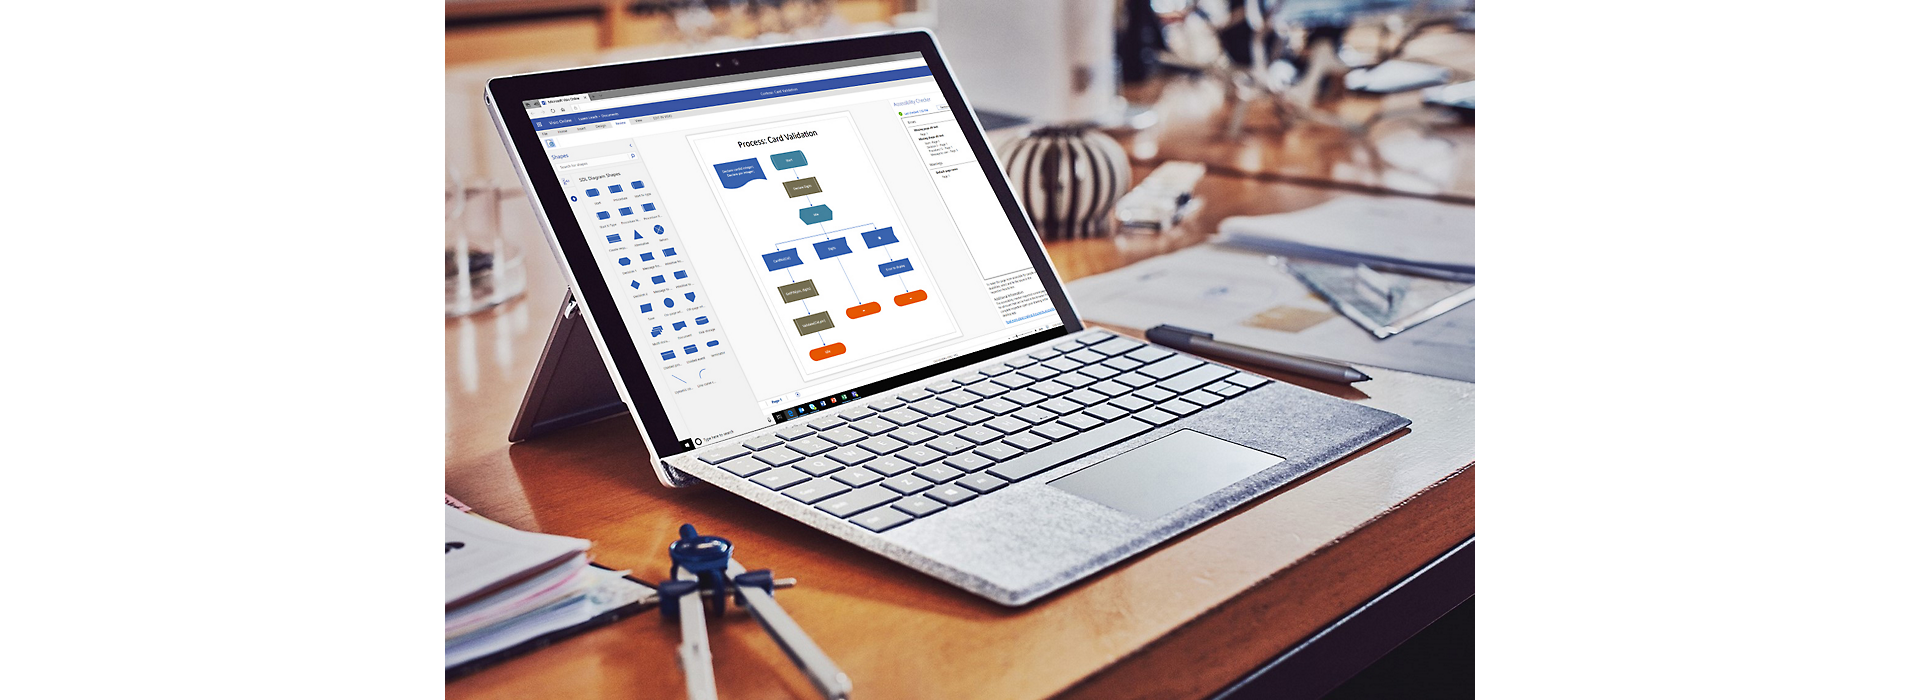 Ноутбук Surface, на якому відкрито блок-схему у Visio